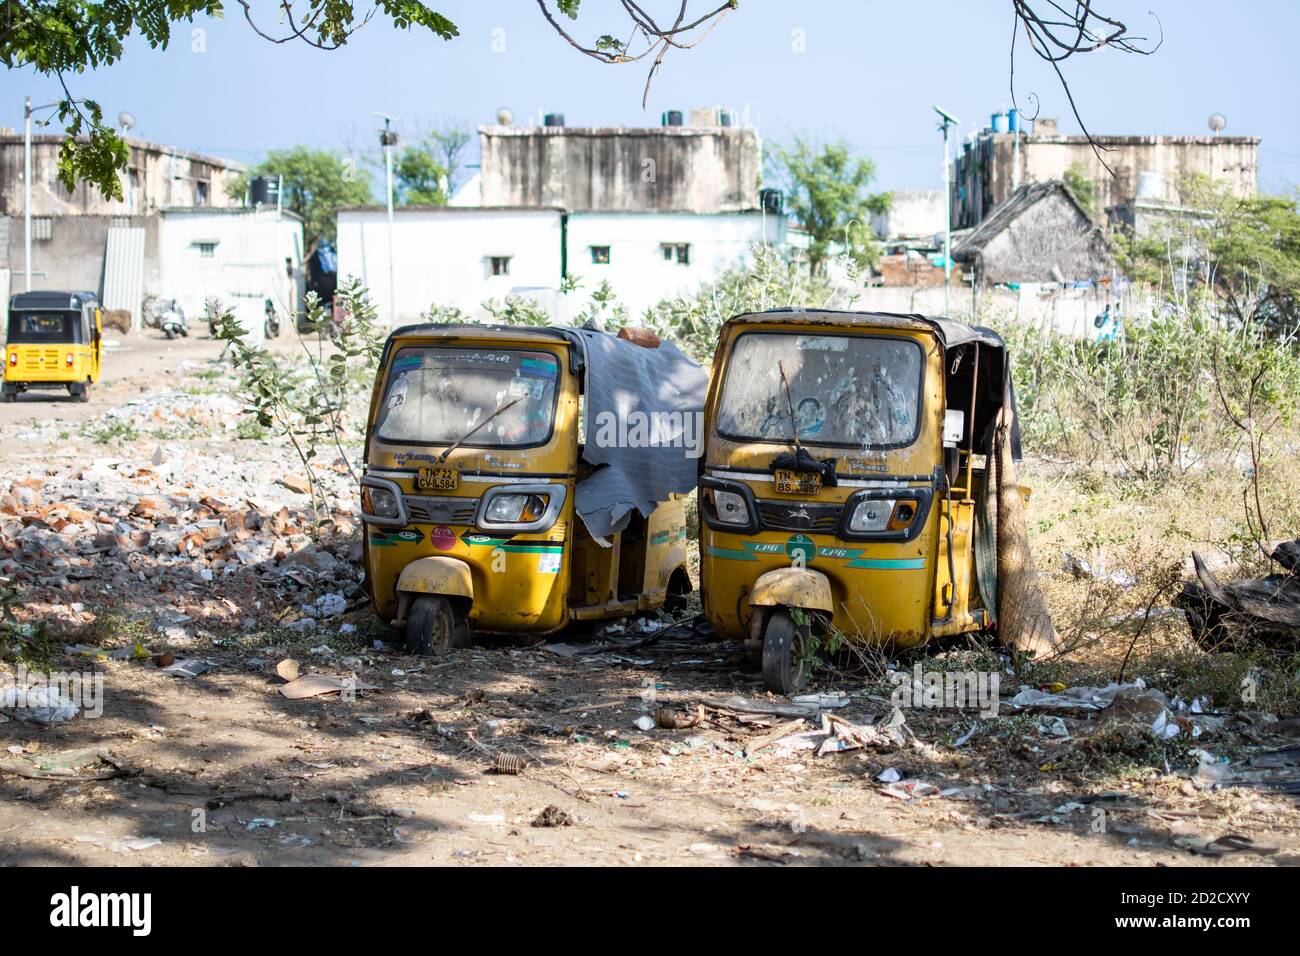 Chennai, Indien - 8. Februar 2020: Zwei traditionelle gelbe Auto-Rikschas wurden am 8. Februar 2020 in Chennai, Indien, aufgegeben und vergessen Stockfoto